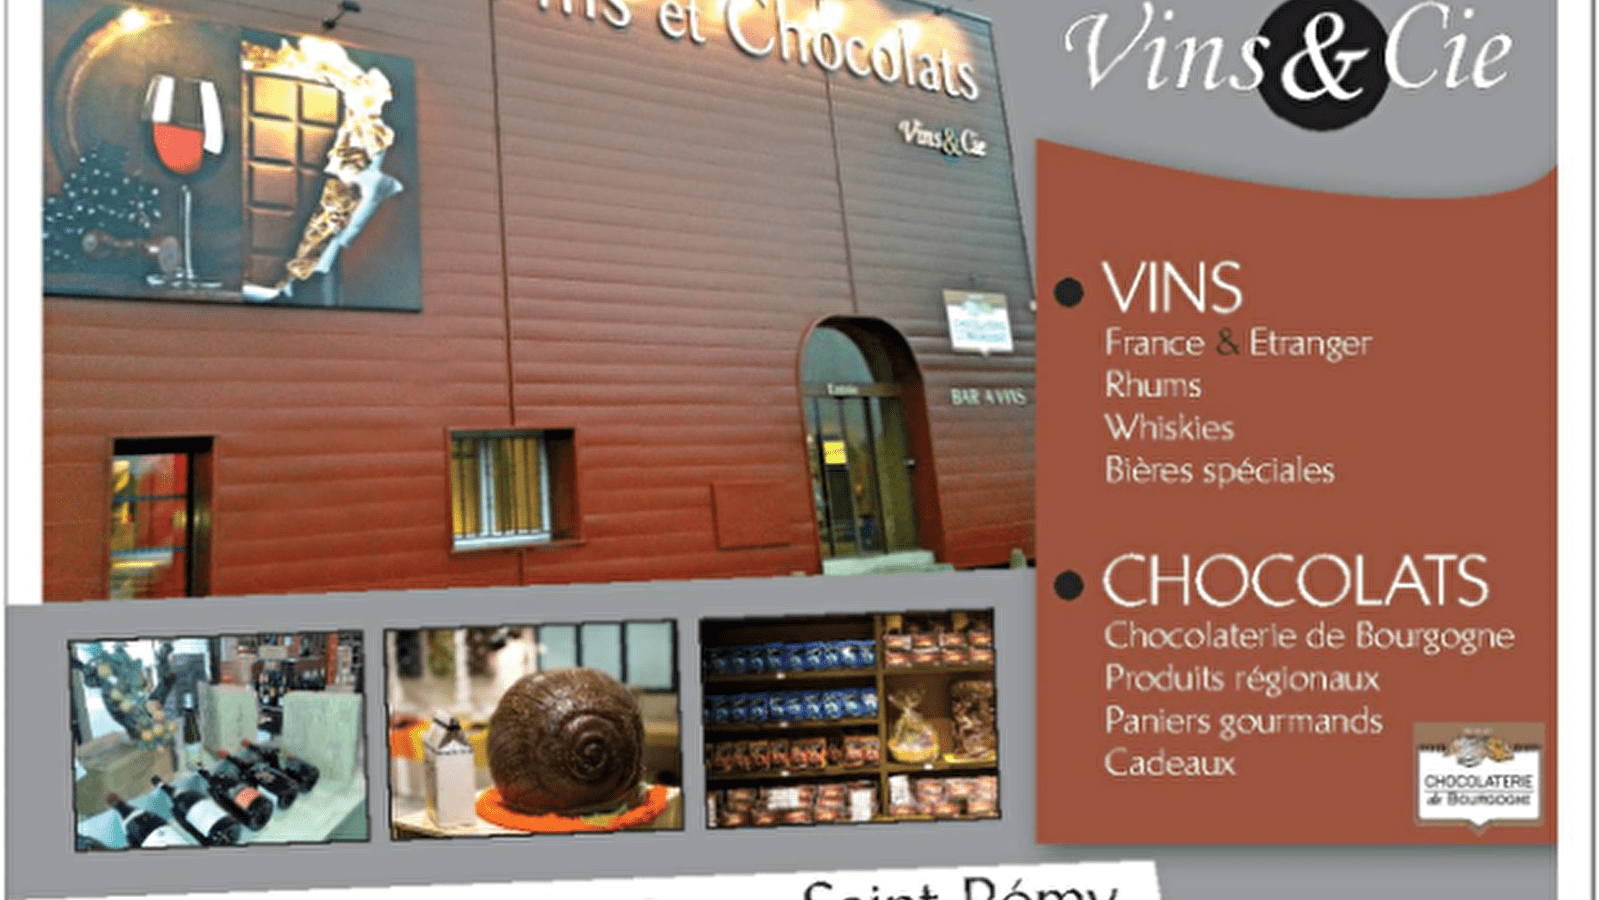 Vins & Chocolats - Vins&Cie